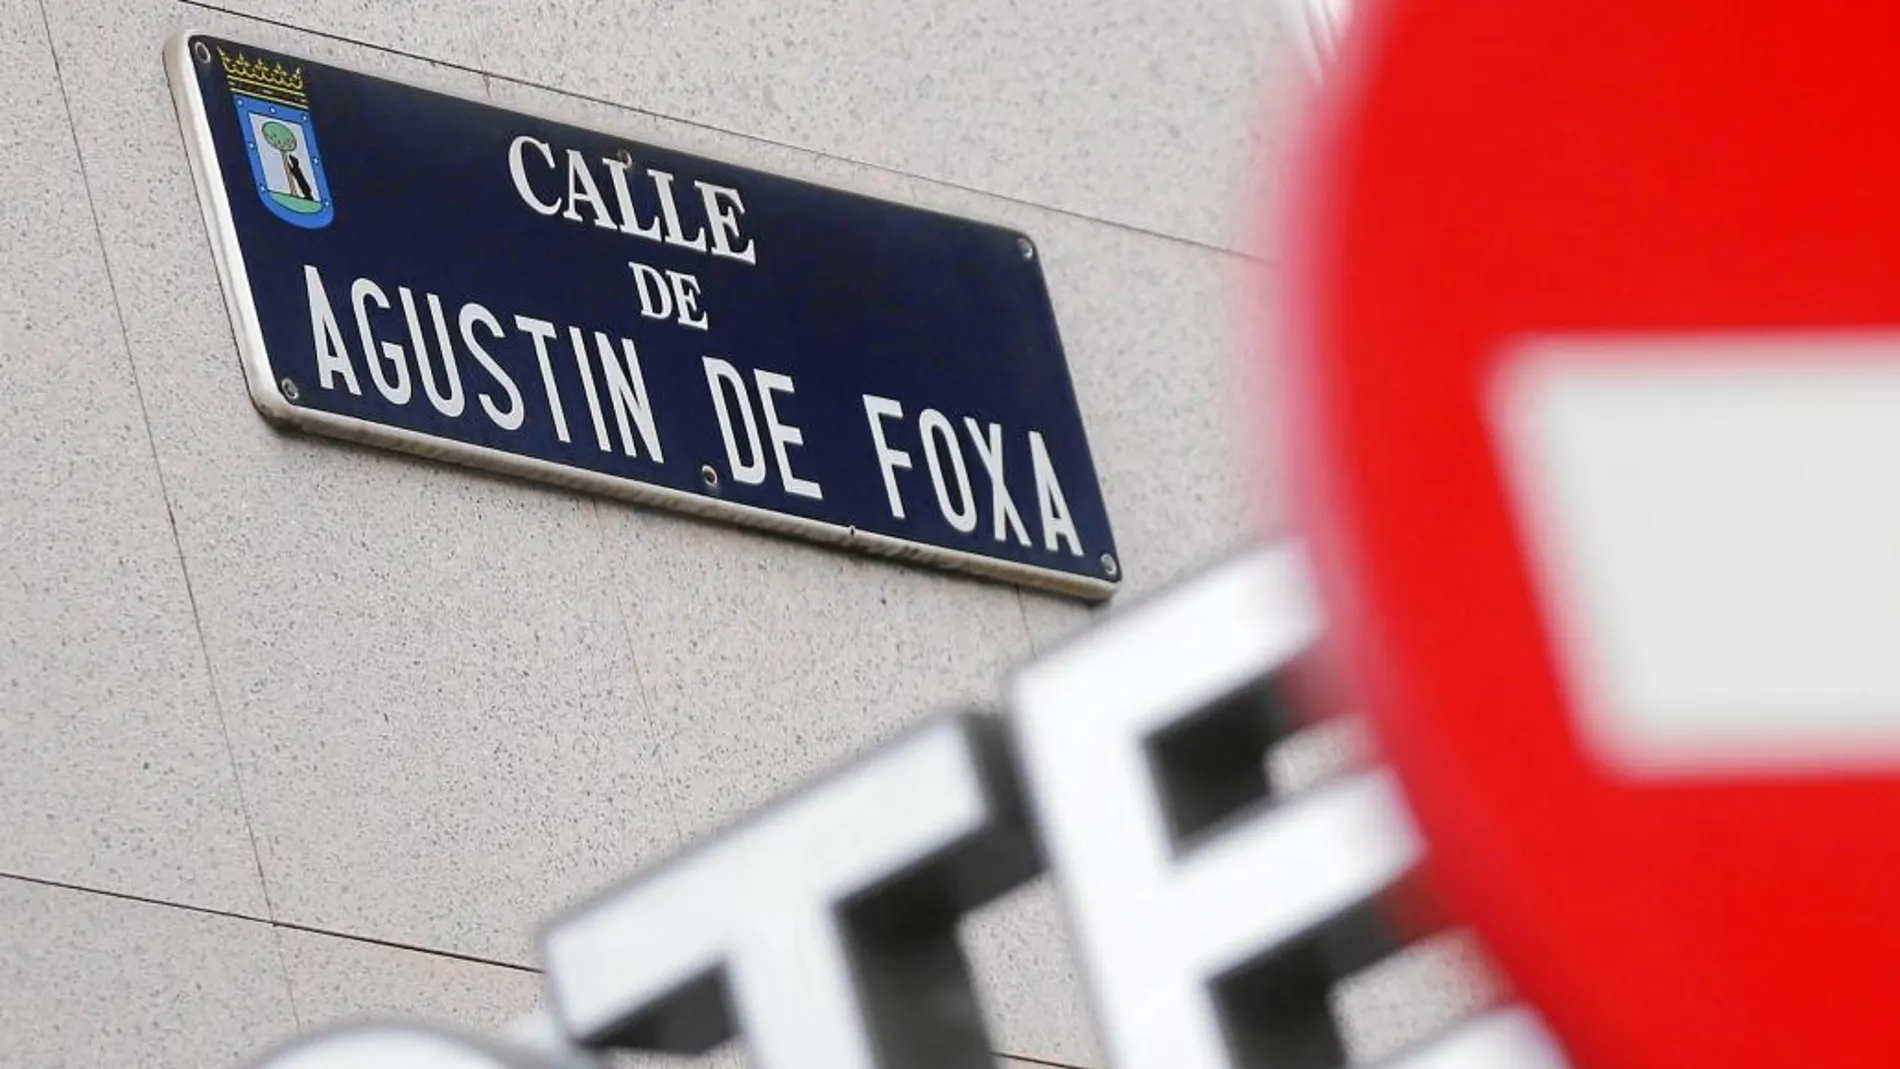 El poeta Agustín de Foxá da nombre a una pequeña calle de Madrid situada junto a la estación de Chamartín